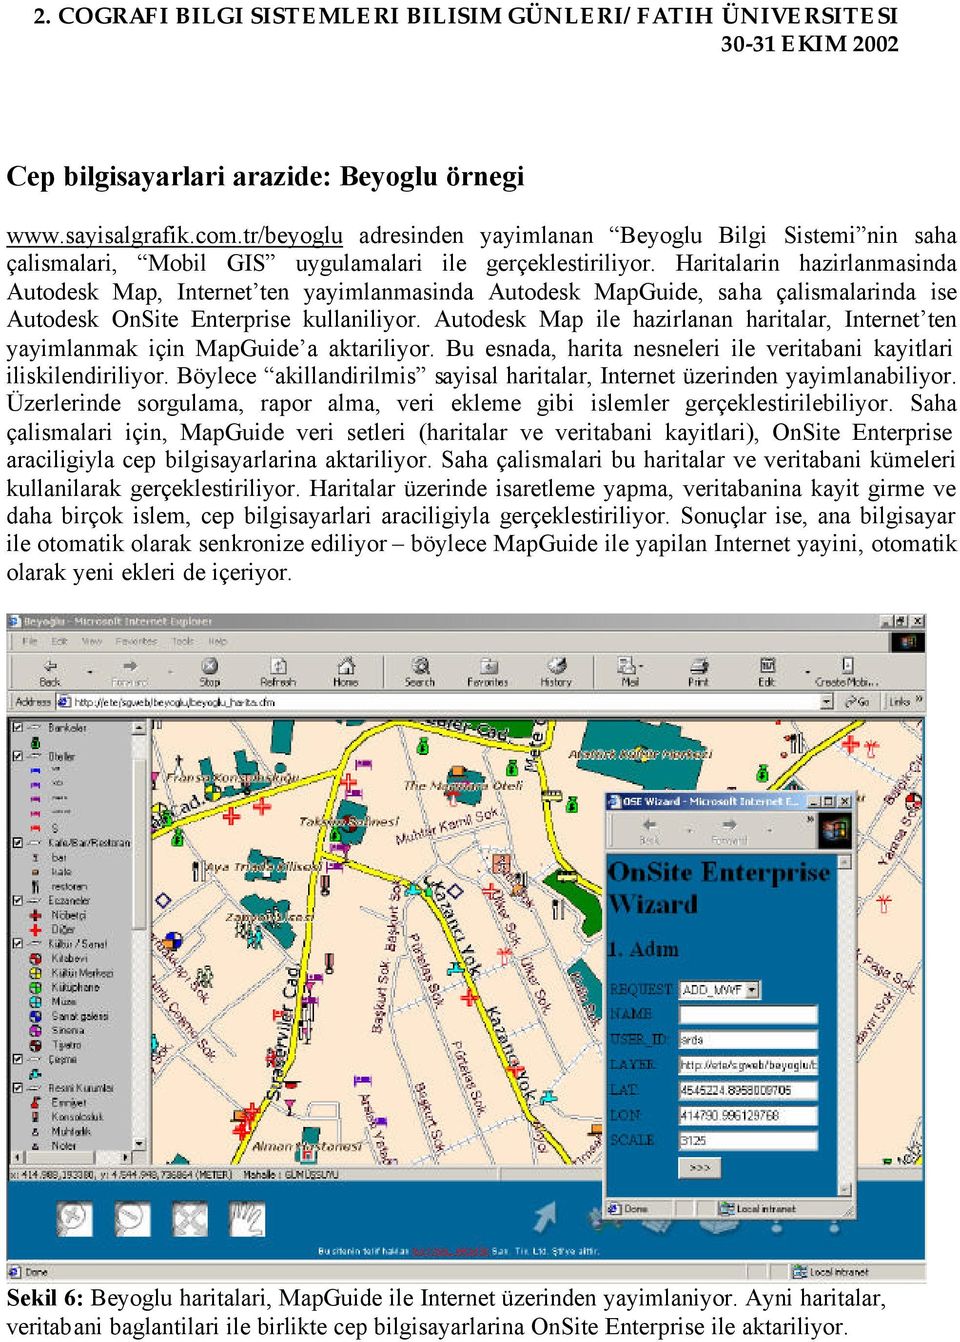 Autodesk Map ile hazirlanan haritalar, Internet ten yayimlanmak için MapGuide a aktariliyor. Bu esnada, harita nesneleri ile veritabani kayitlari iliskilendiriliyor.